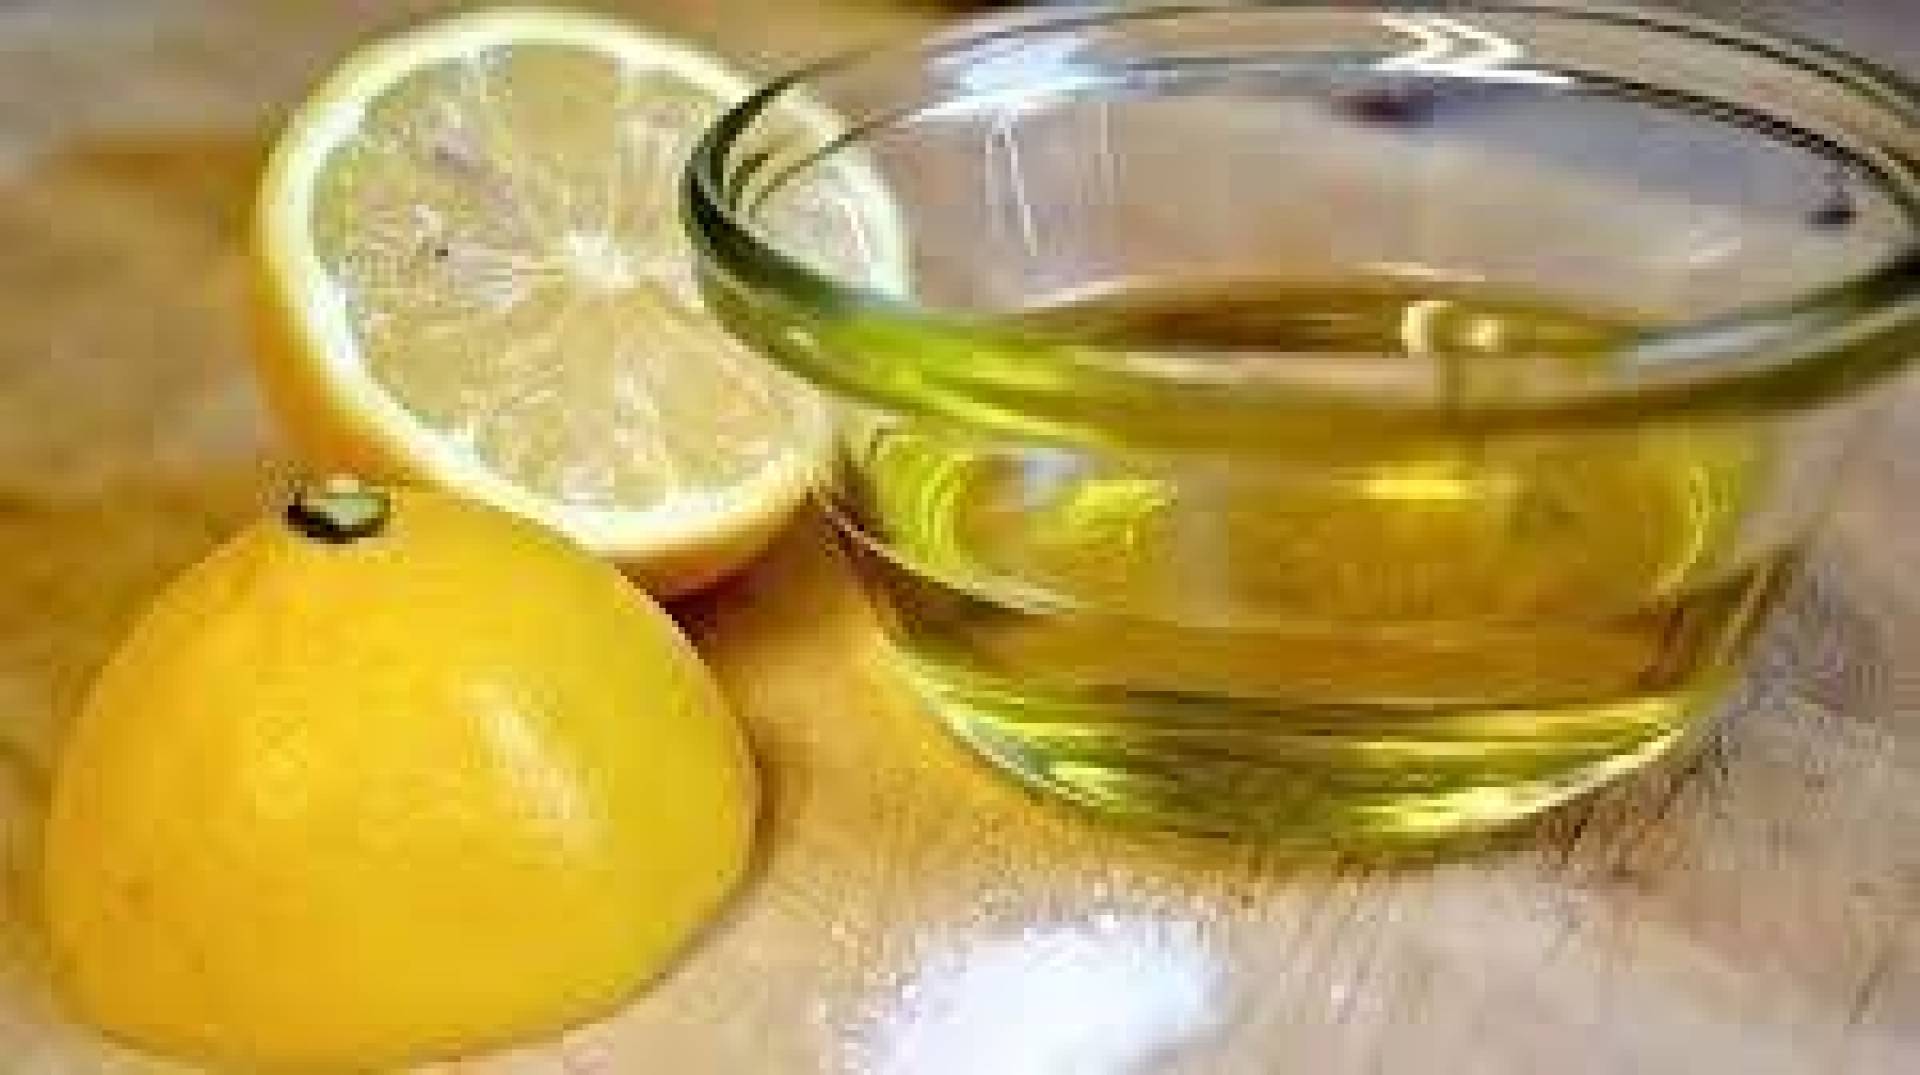 فوائد صحية هائلة عند مزج زيت الزيتون وعصير الليمون له .. تعرف عليها